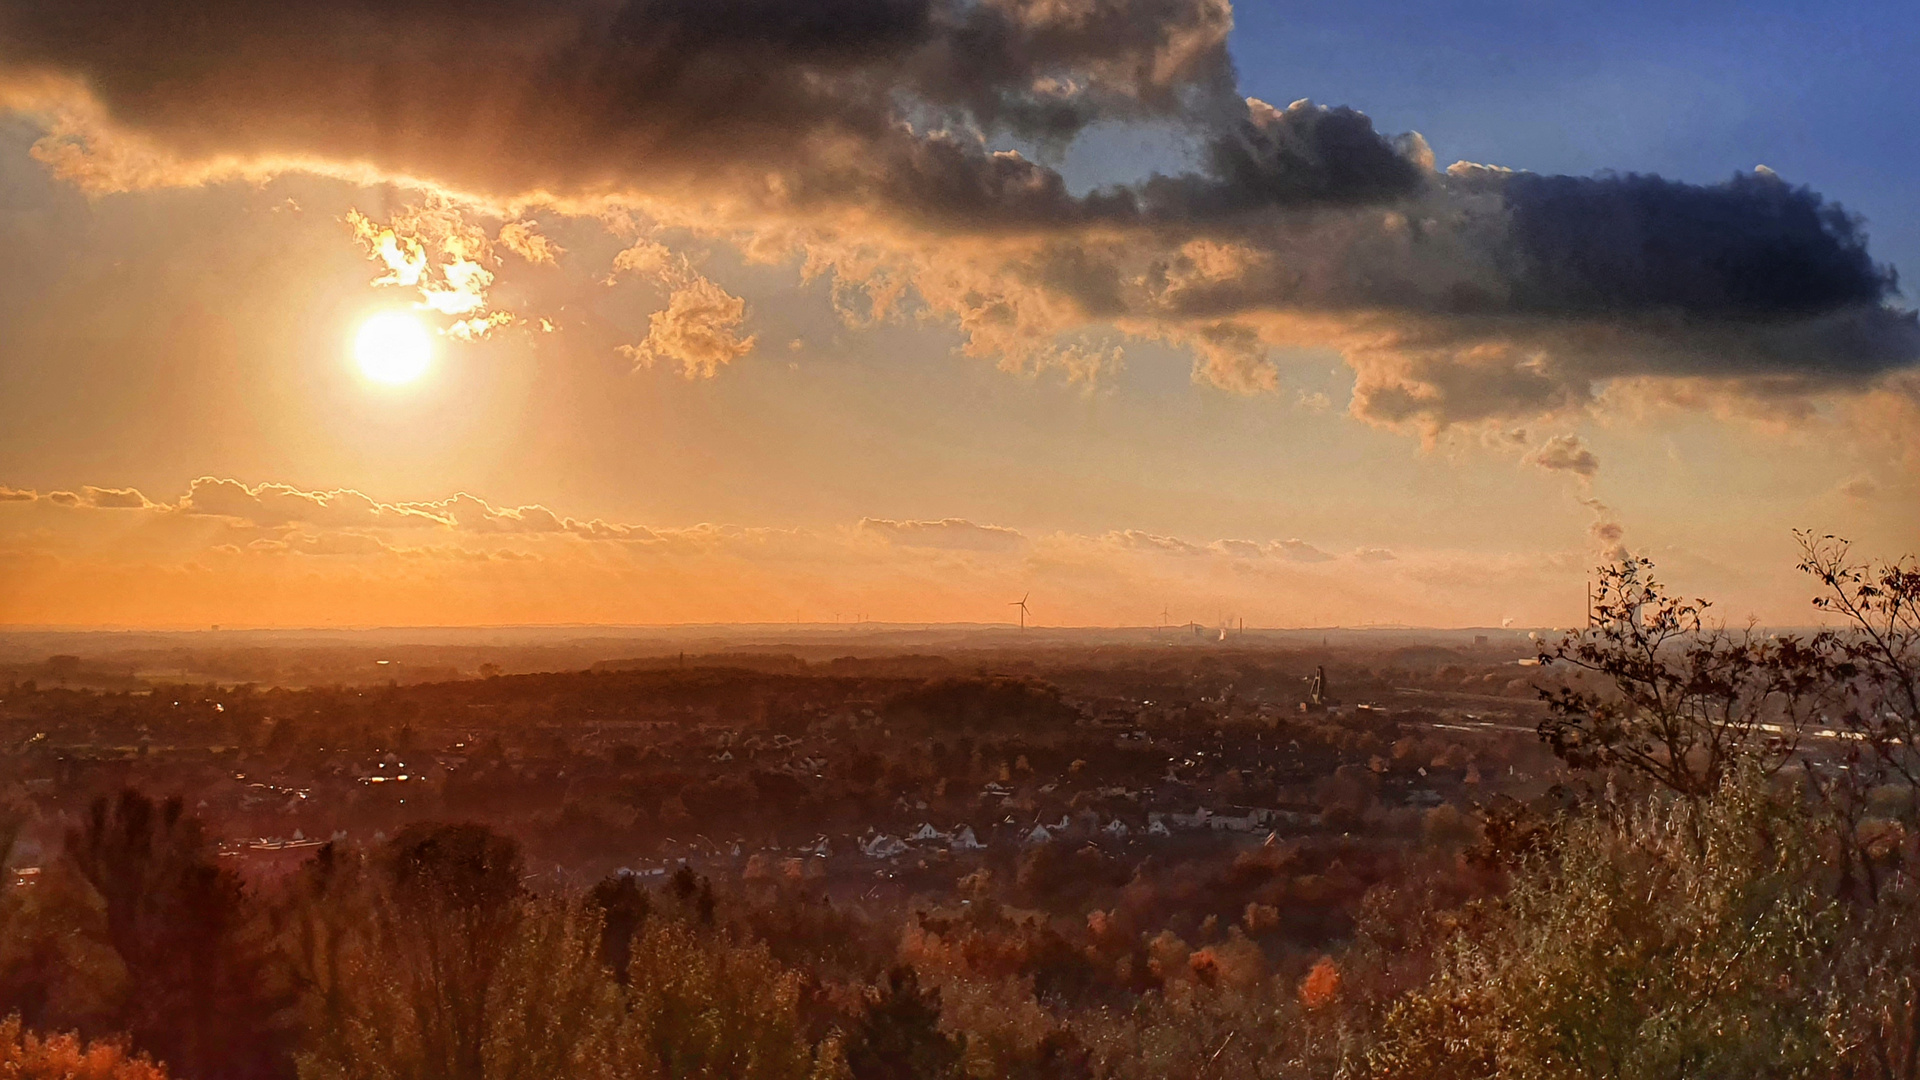 Sonnenuntergang im Ruhrgebiet